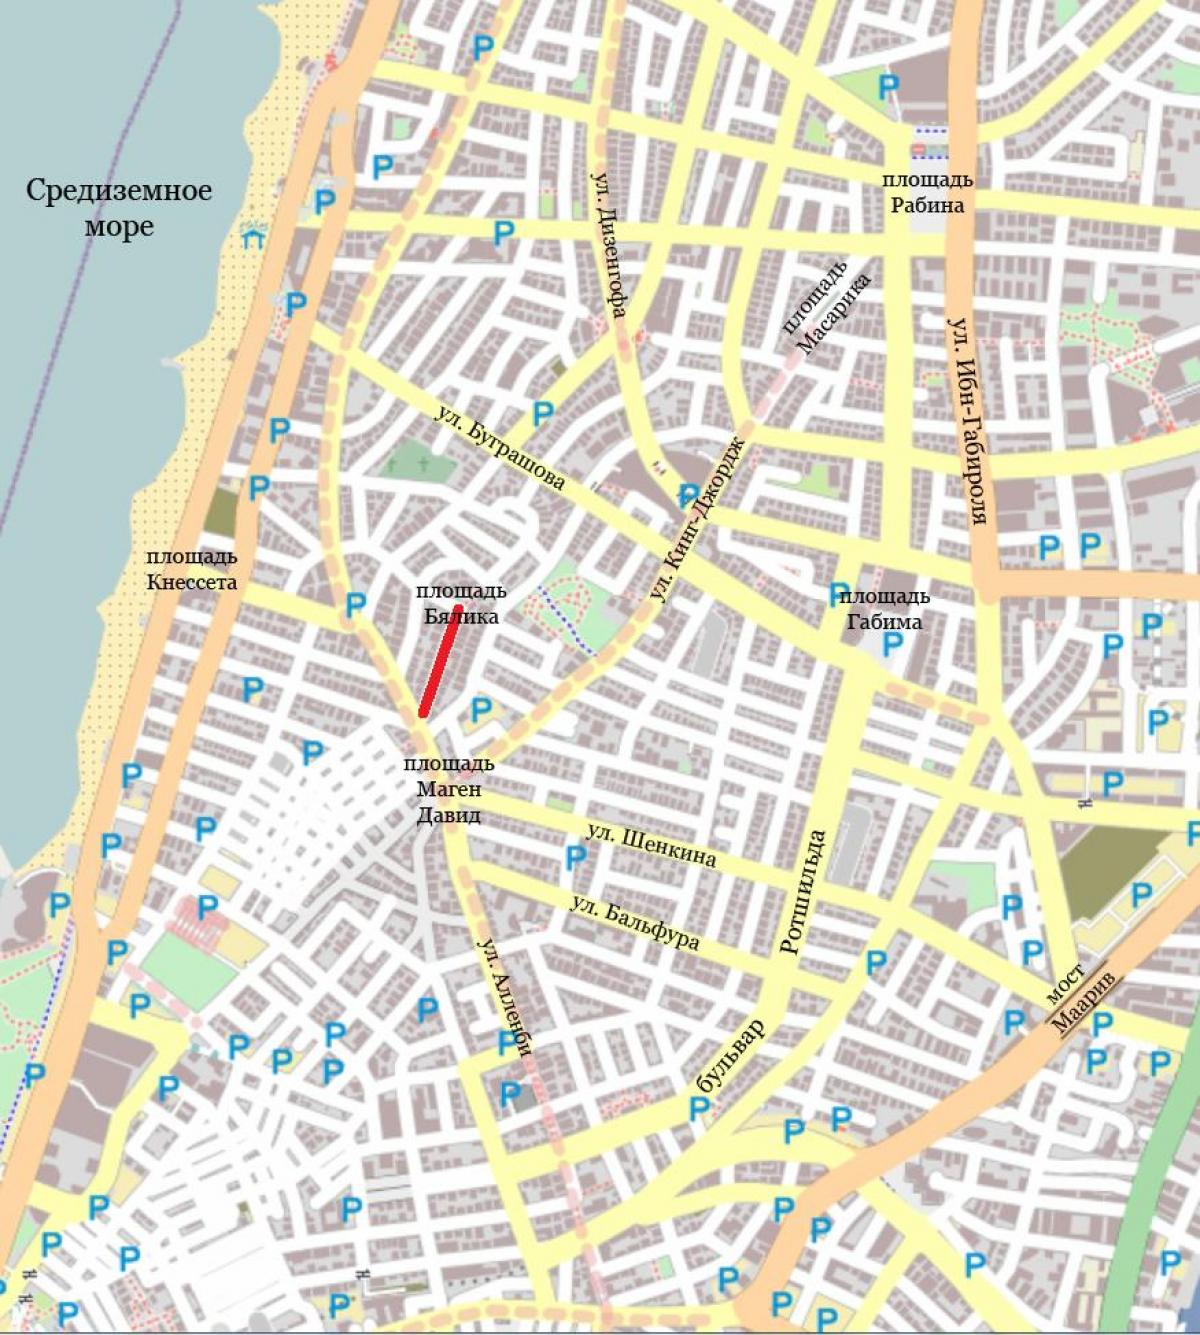 מפת רחובות של העיר תל אביב ישראל